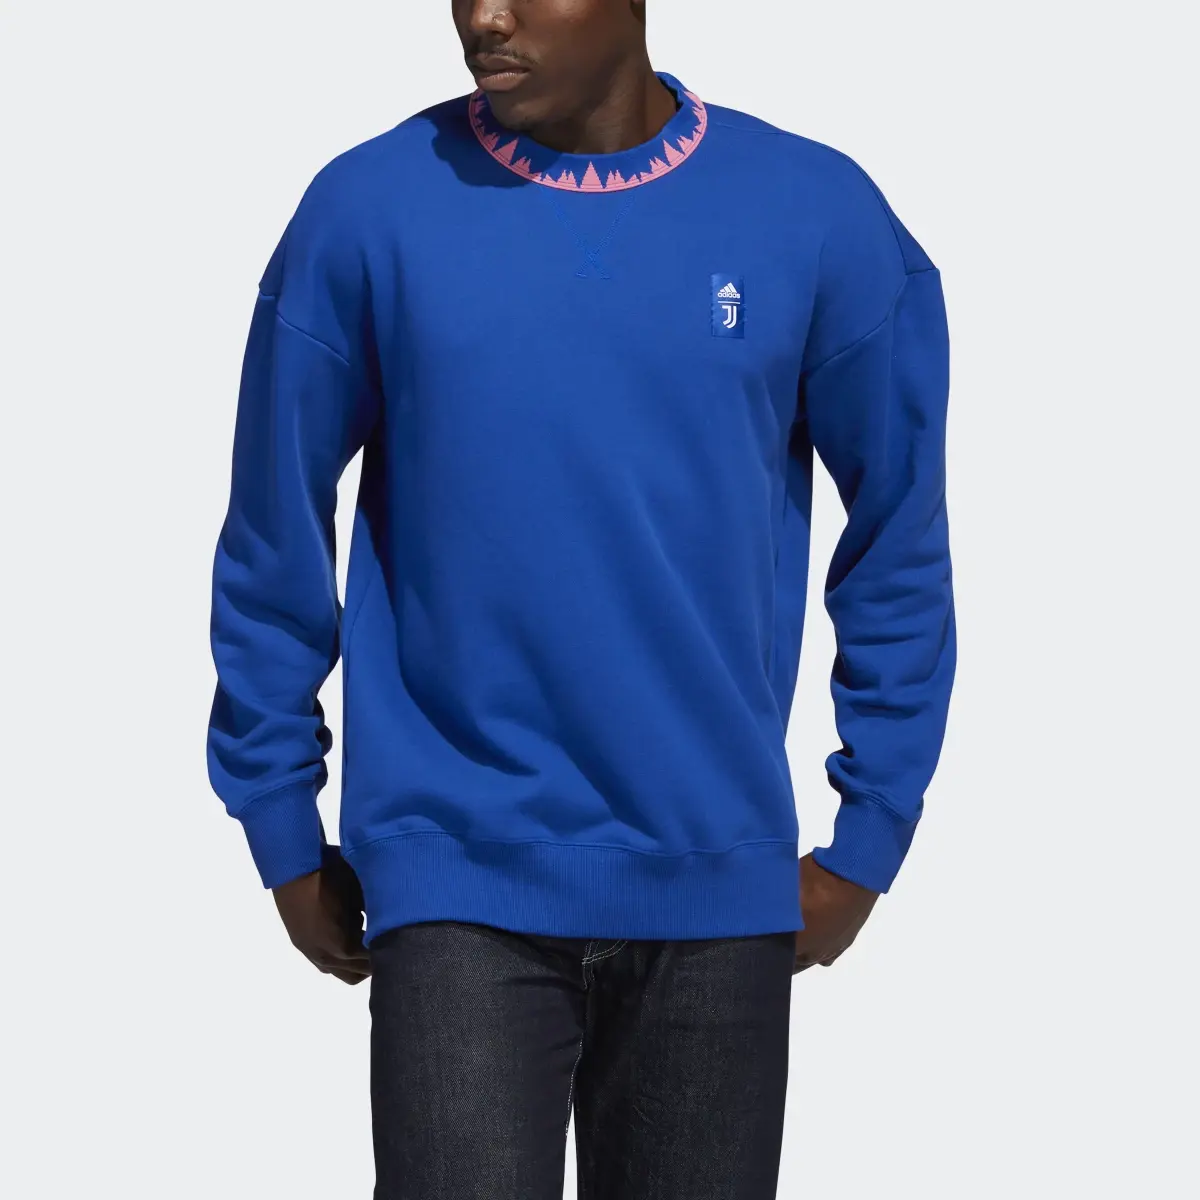 Adidas Juventus Turin Lifestyler Sweatshirt. 1